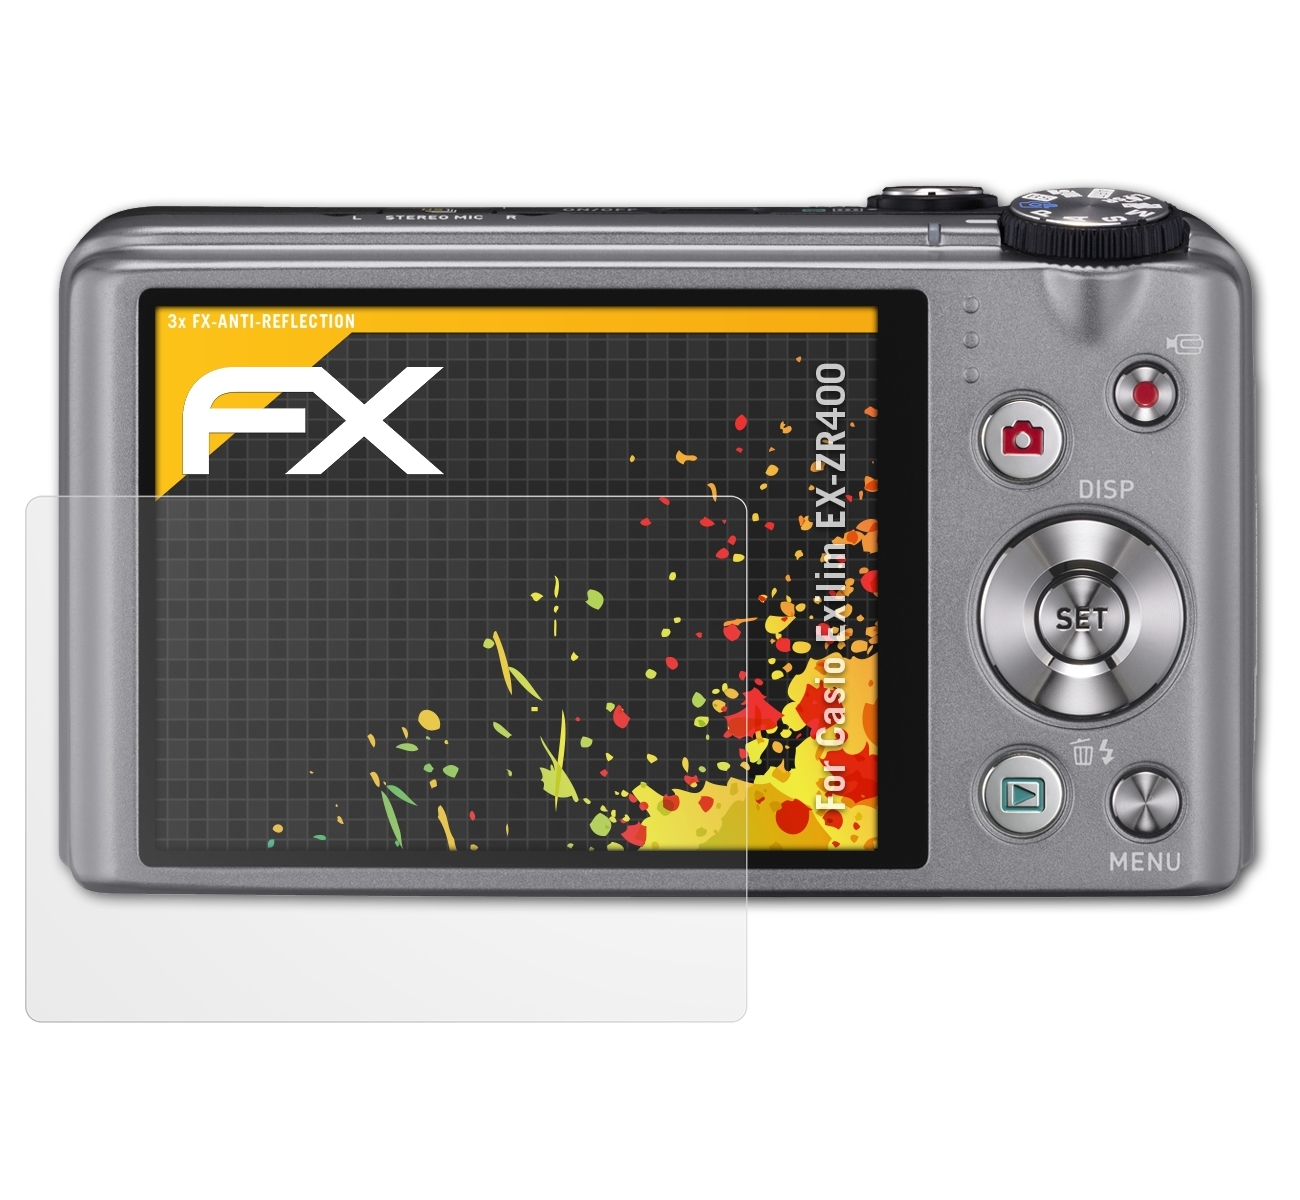 EX-ZR400) Exilim FX-Antireflex ATFOLIX 3x Displayschutz(für Casio